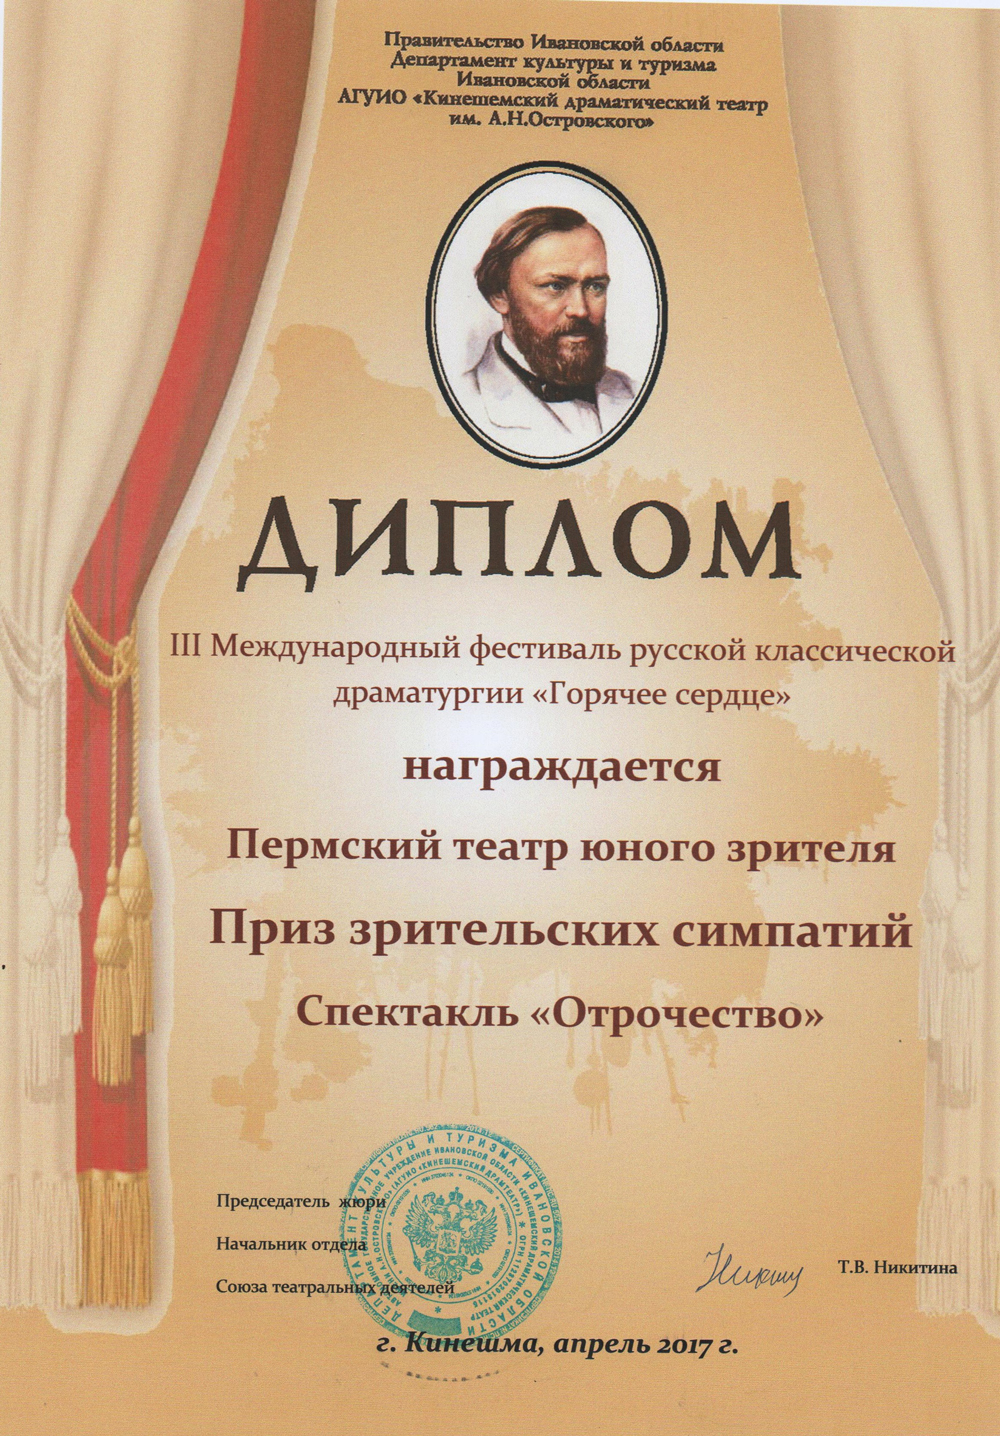 II Международный фестиваль русской классической драматургии «Горячее сердце» 